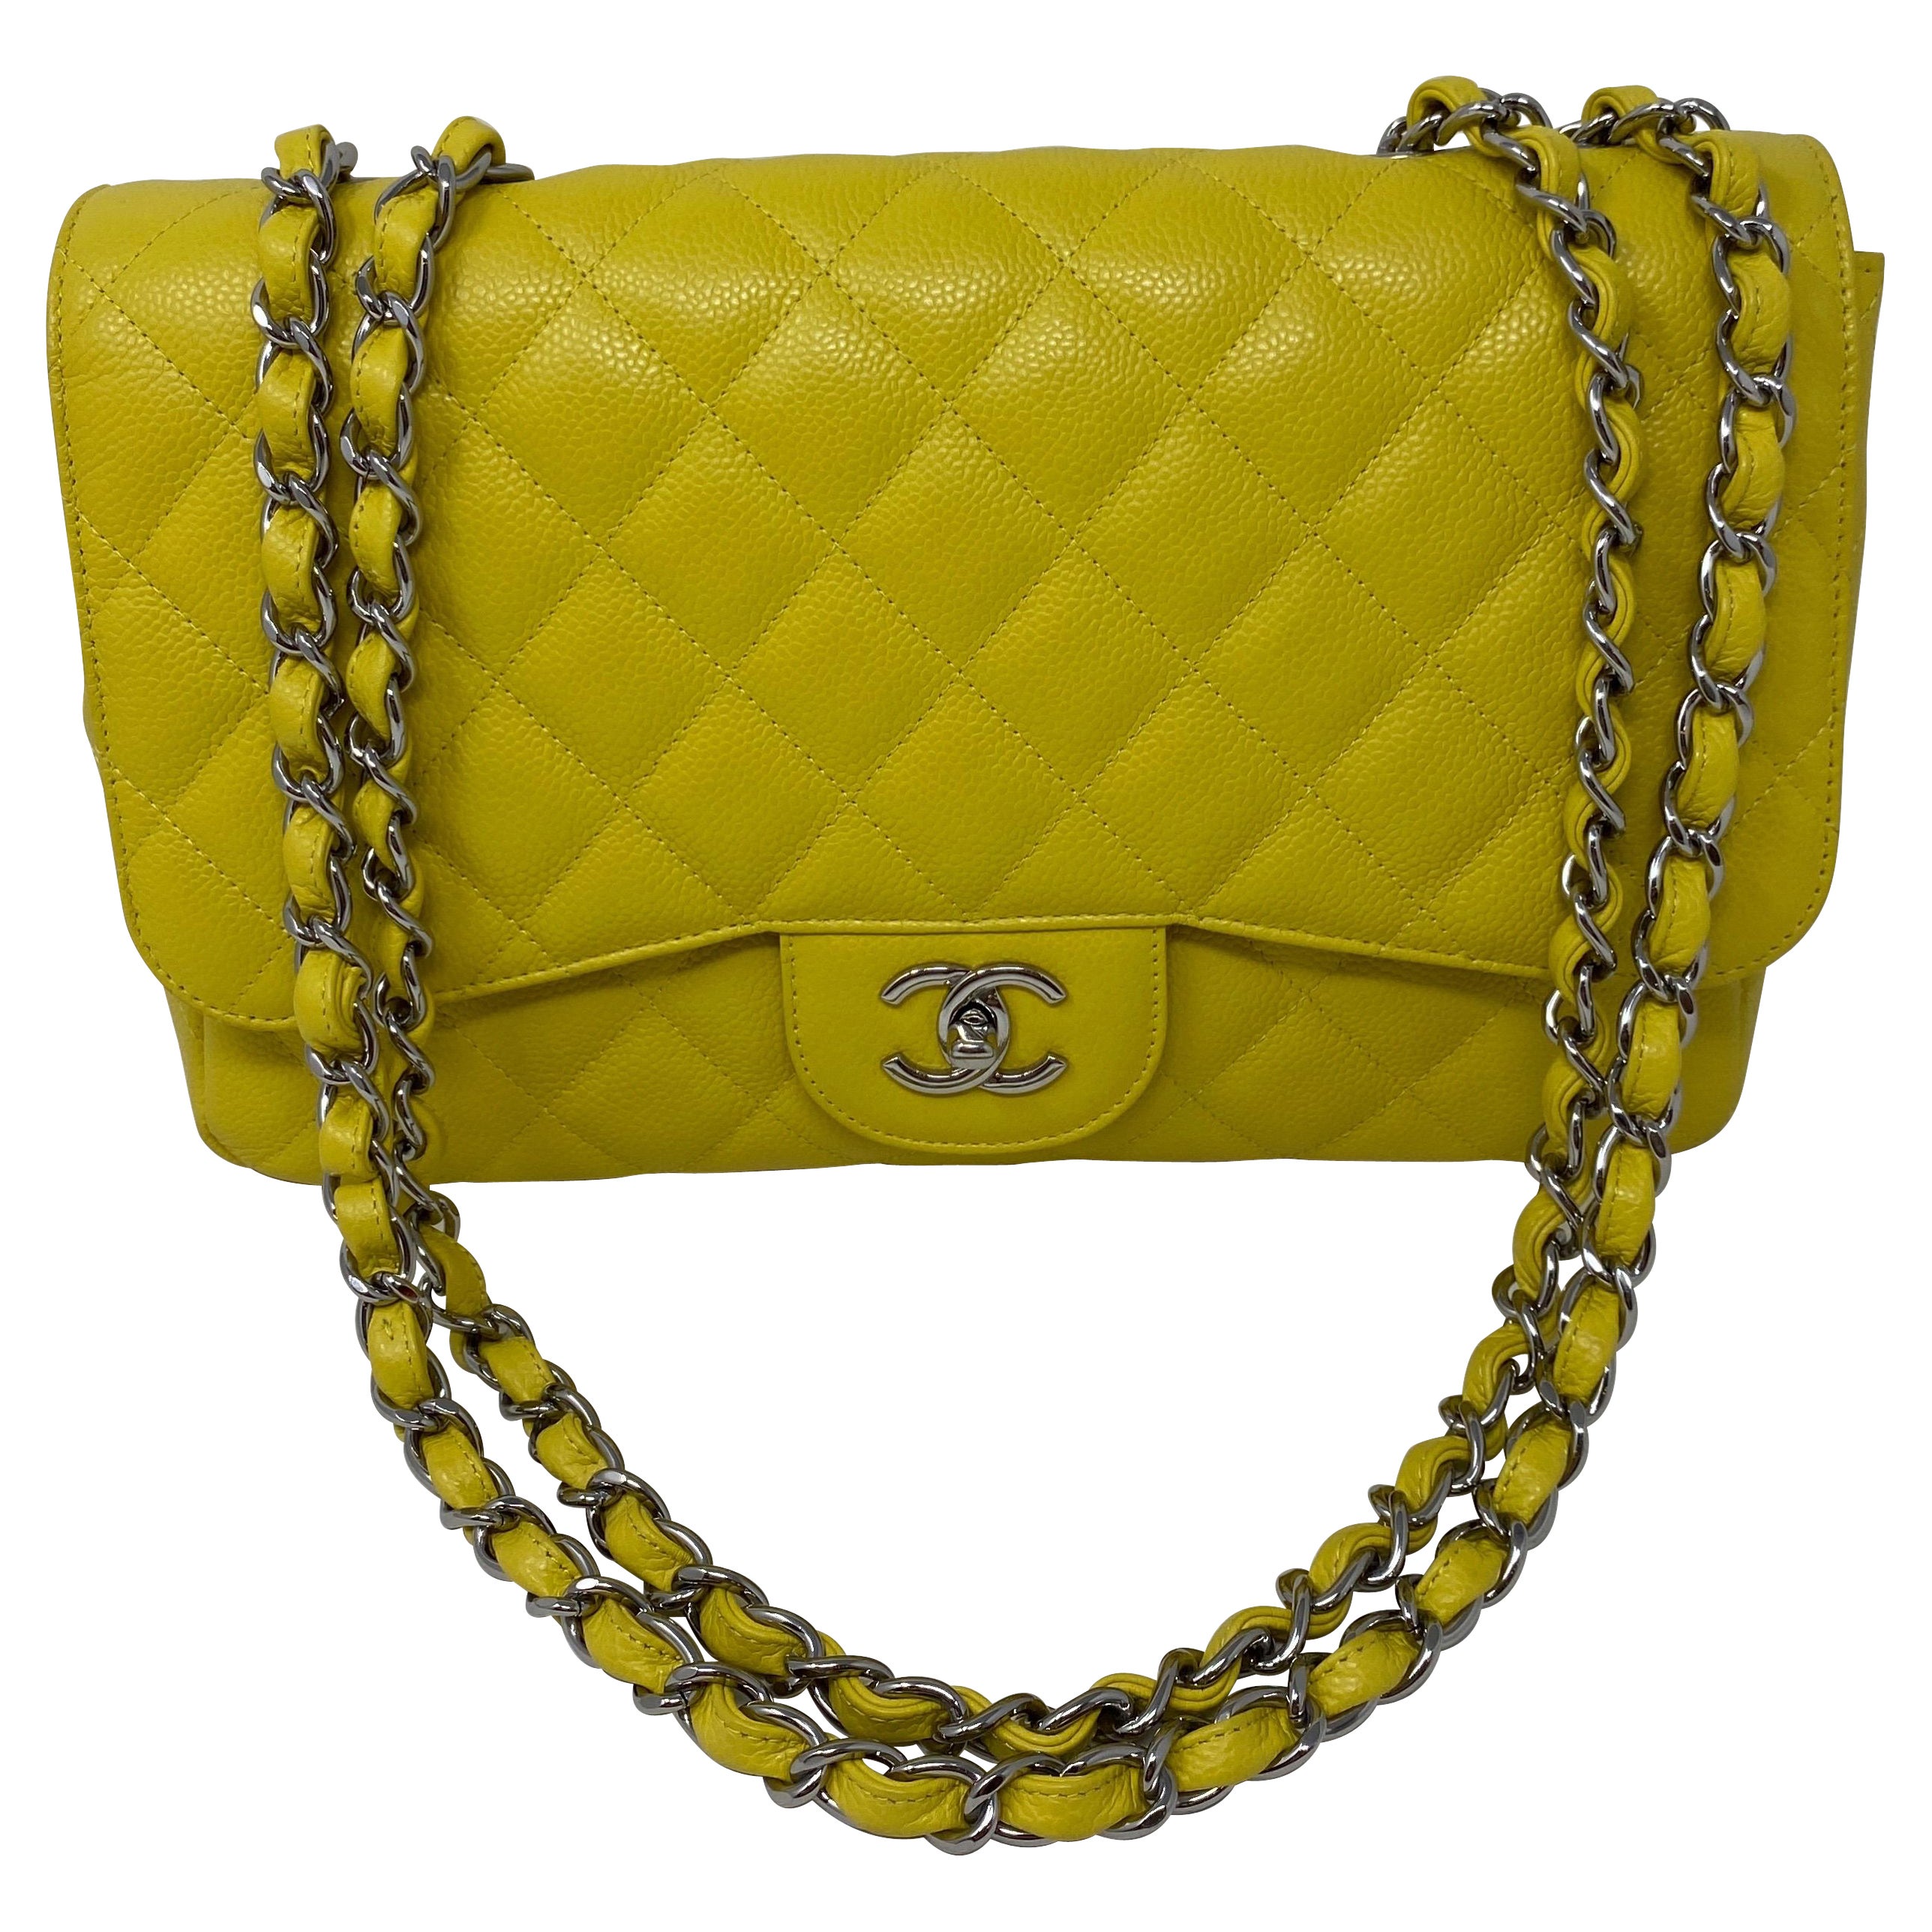 Chanel Jumbo Yellow Bag 